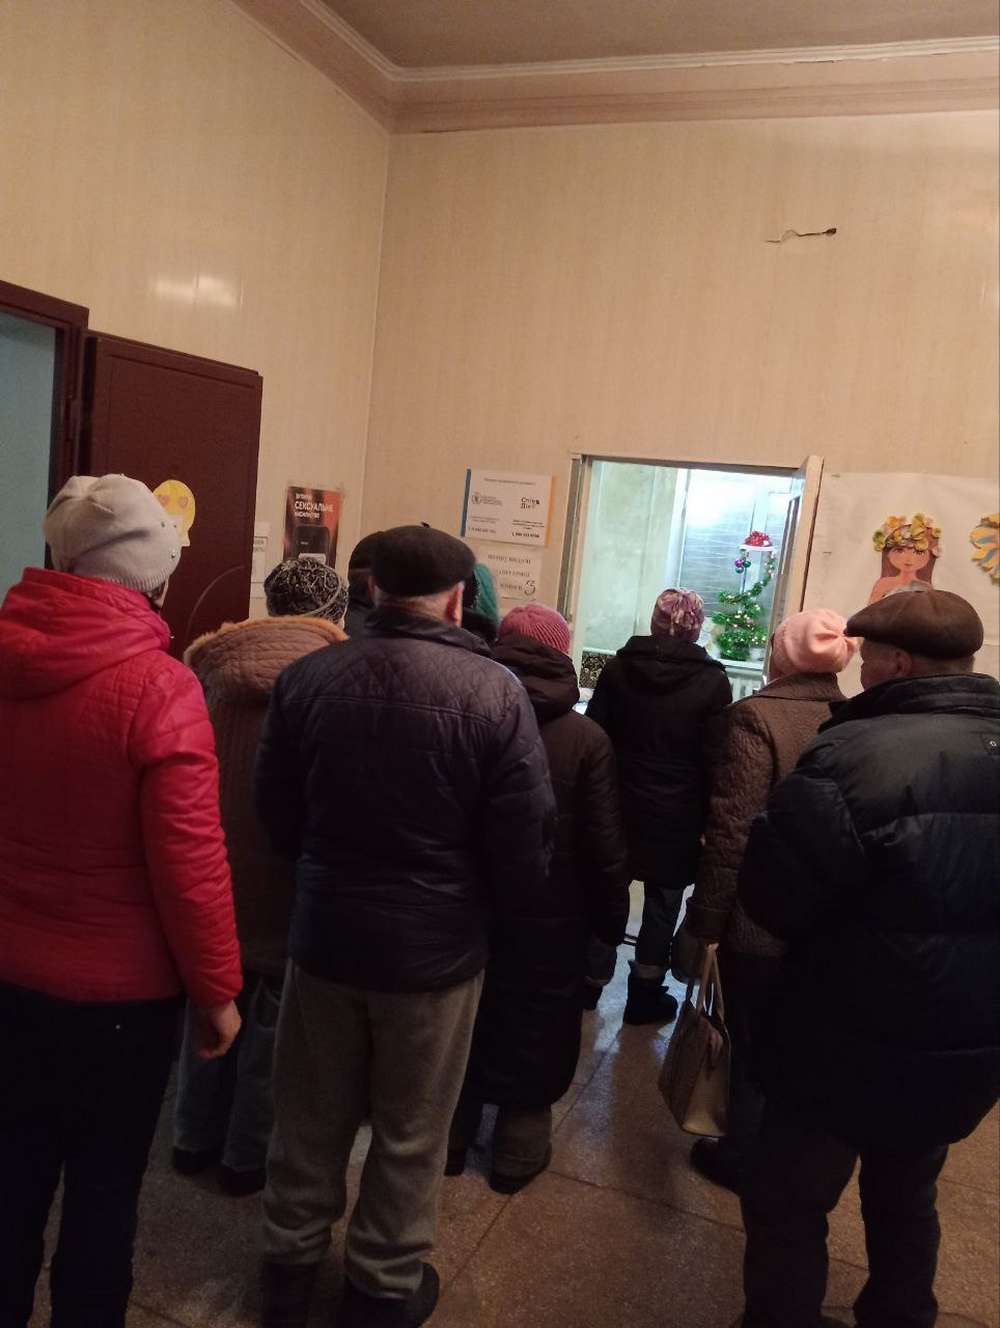 Мешканці Червоногригорівської громади вже отримали 4261 продуктовий набір (фото)